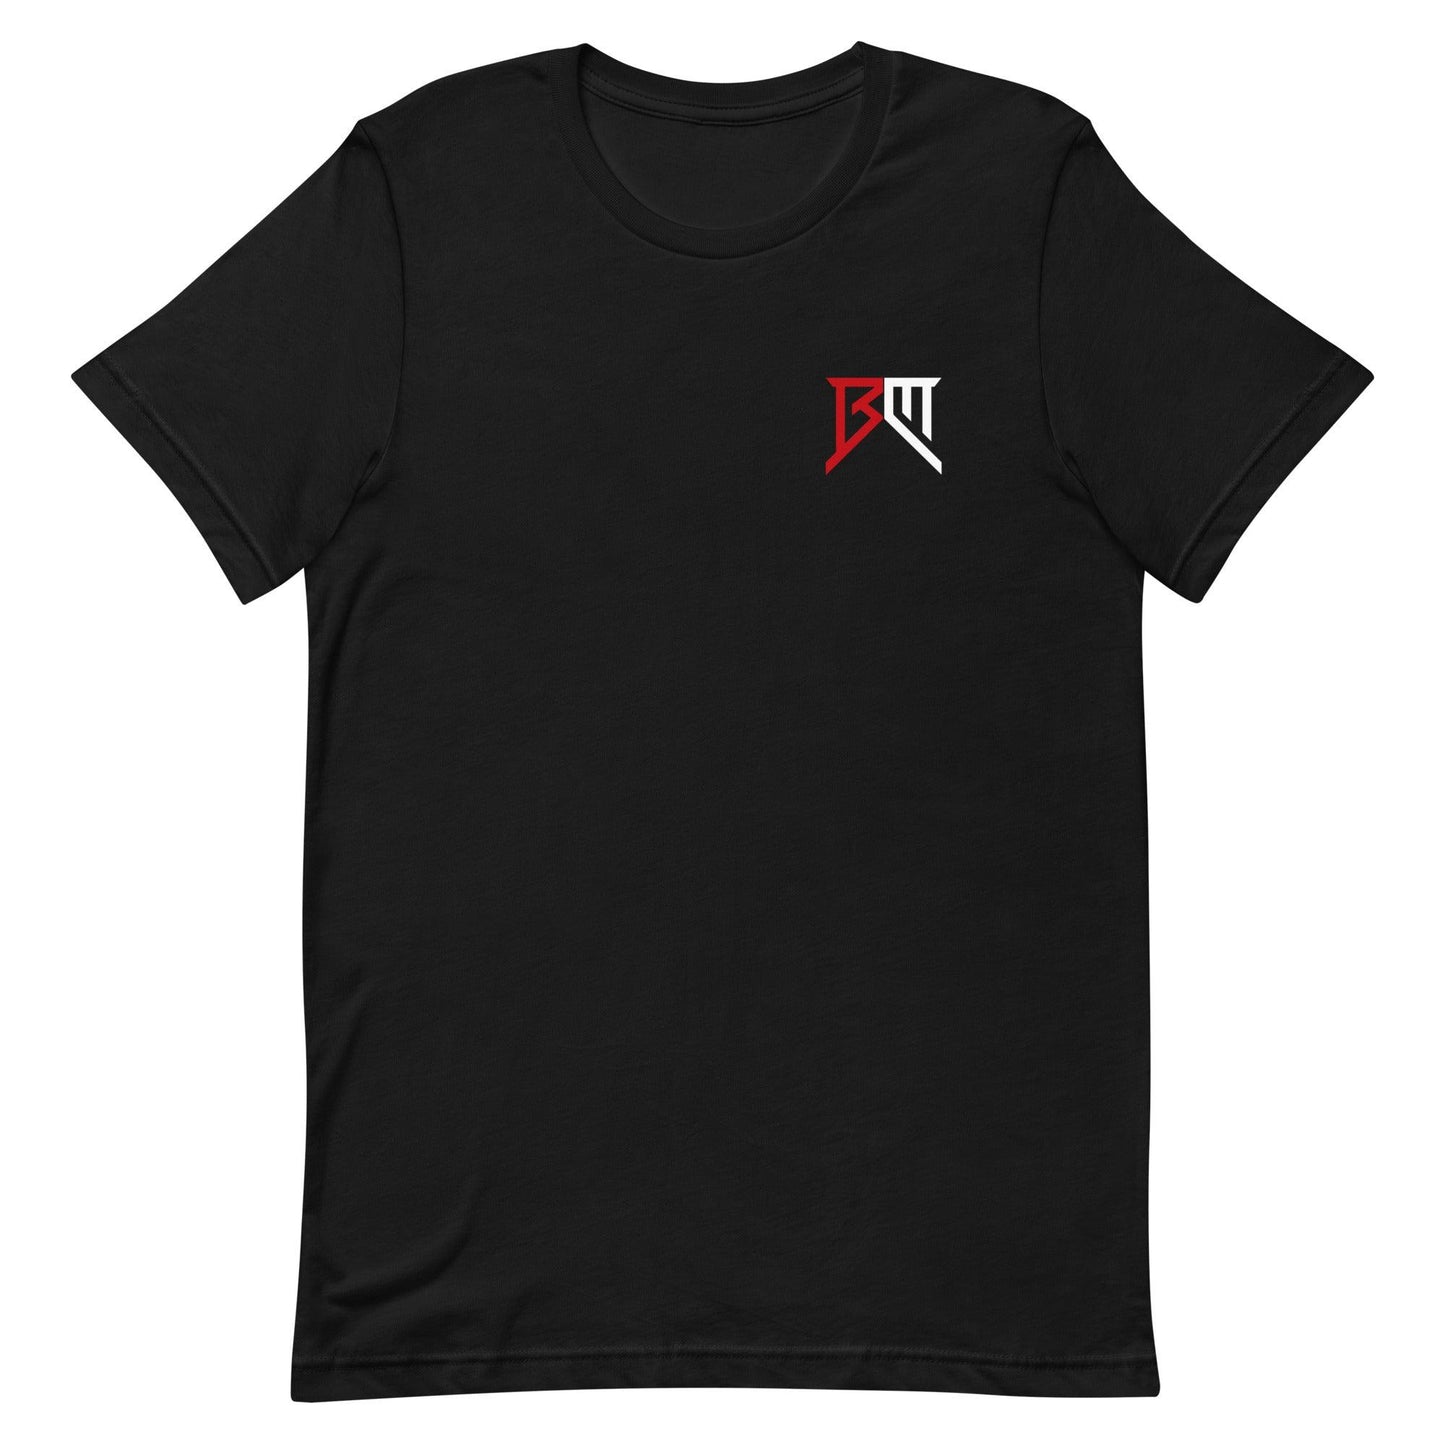 Braedyn Moore "Essential" t-shirt - Fan Arch